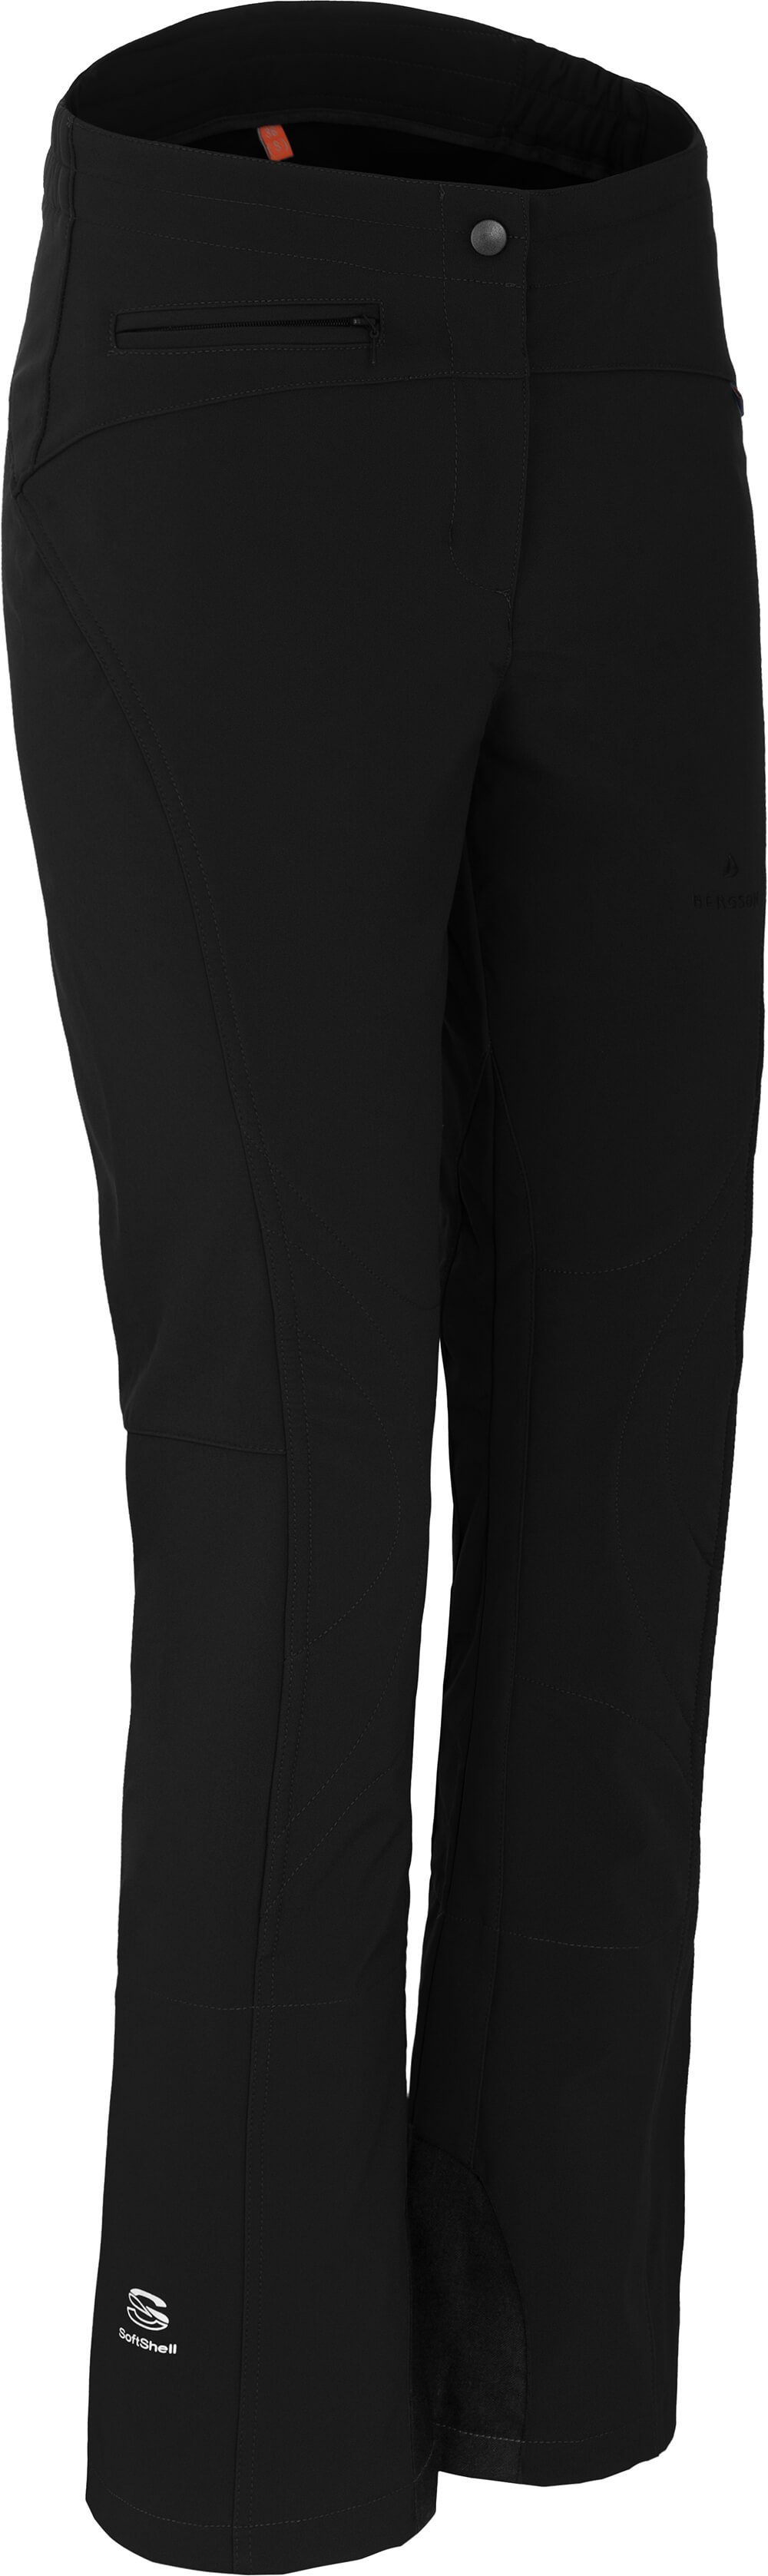 Bergson Skihose »SWITCH« Damen Softshell Skihose, winddicht, elastisch,  Normalgrößen, schwarz online kaufen | OTTO